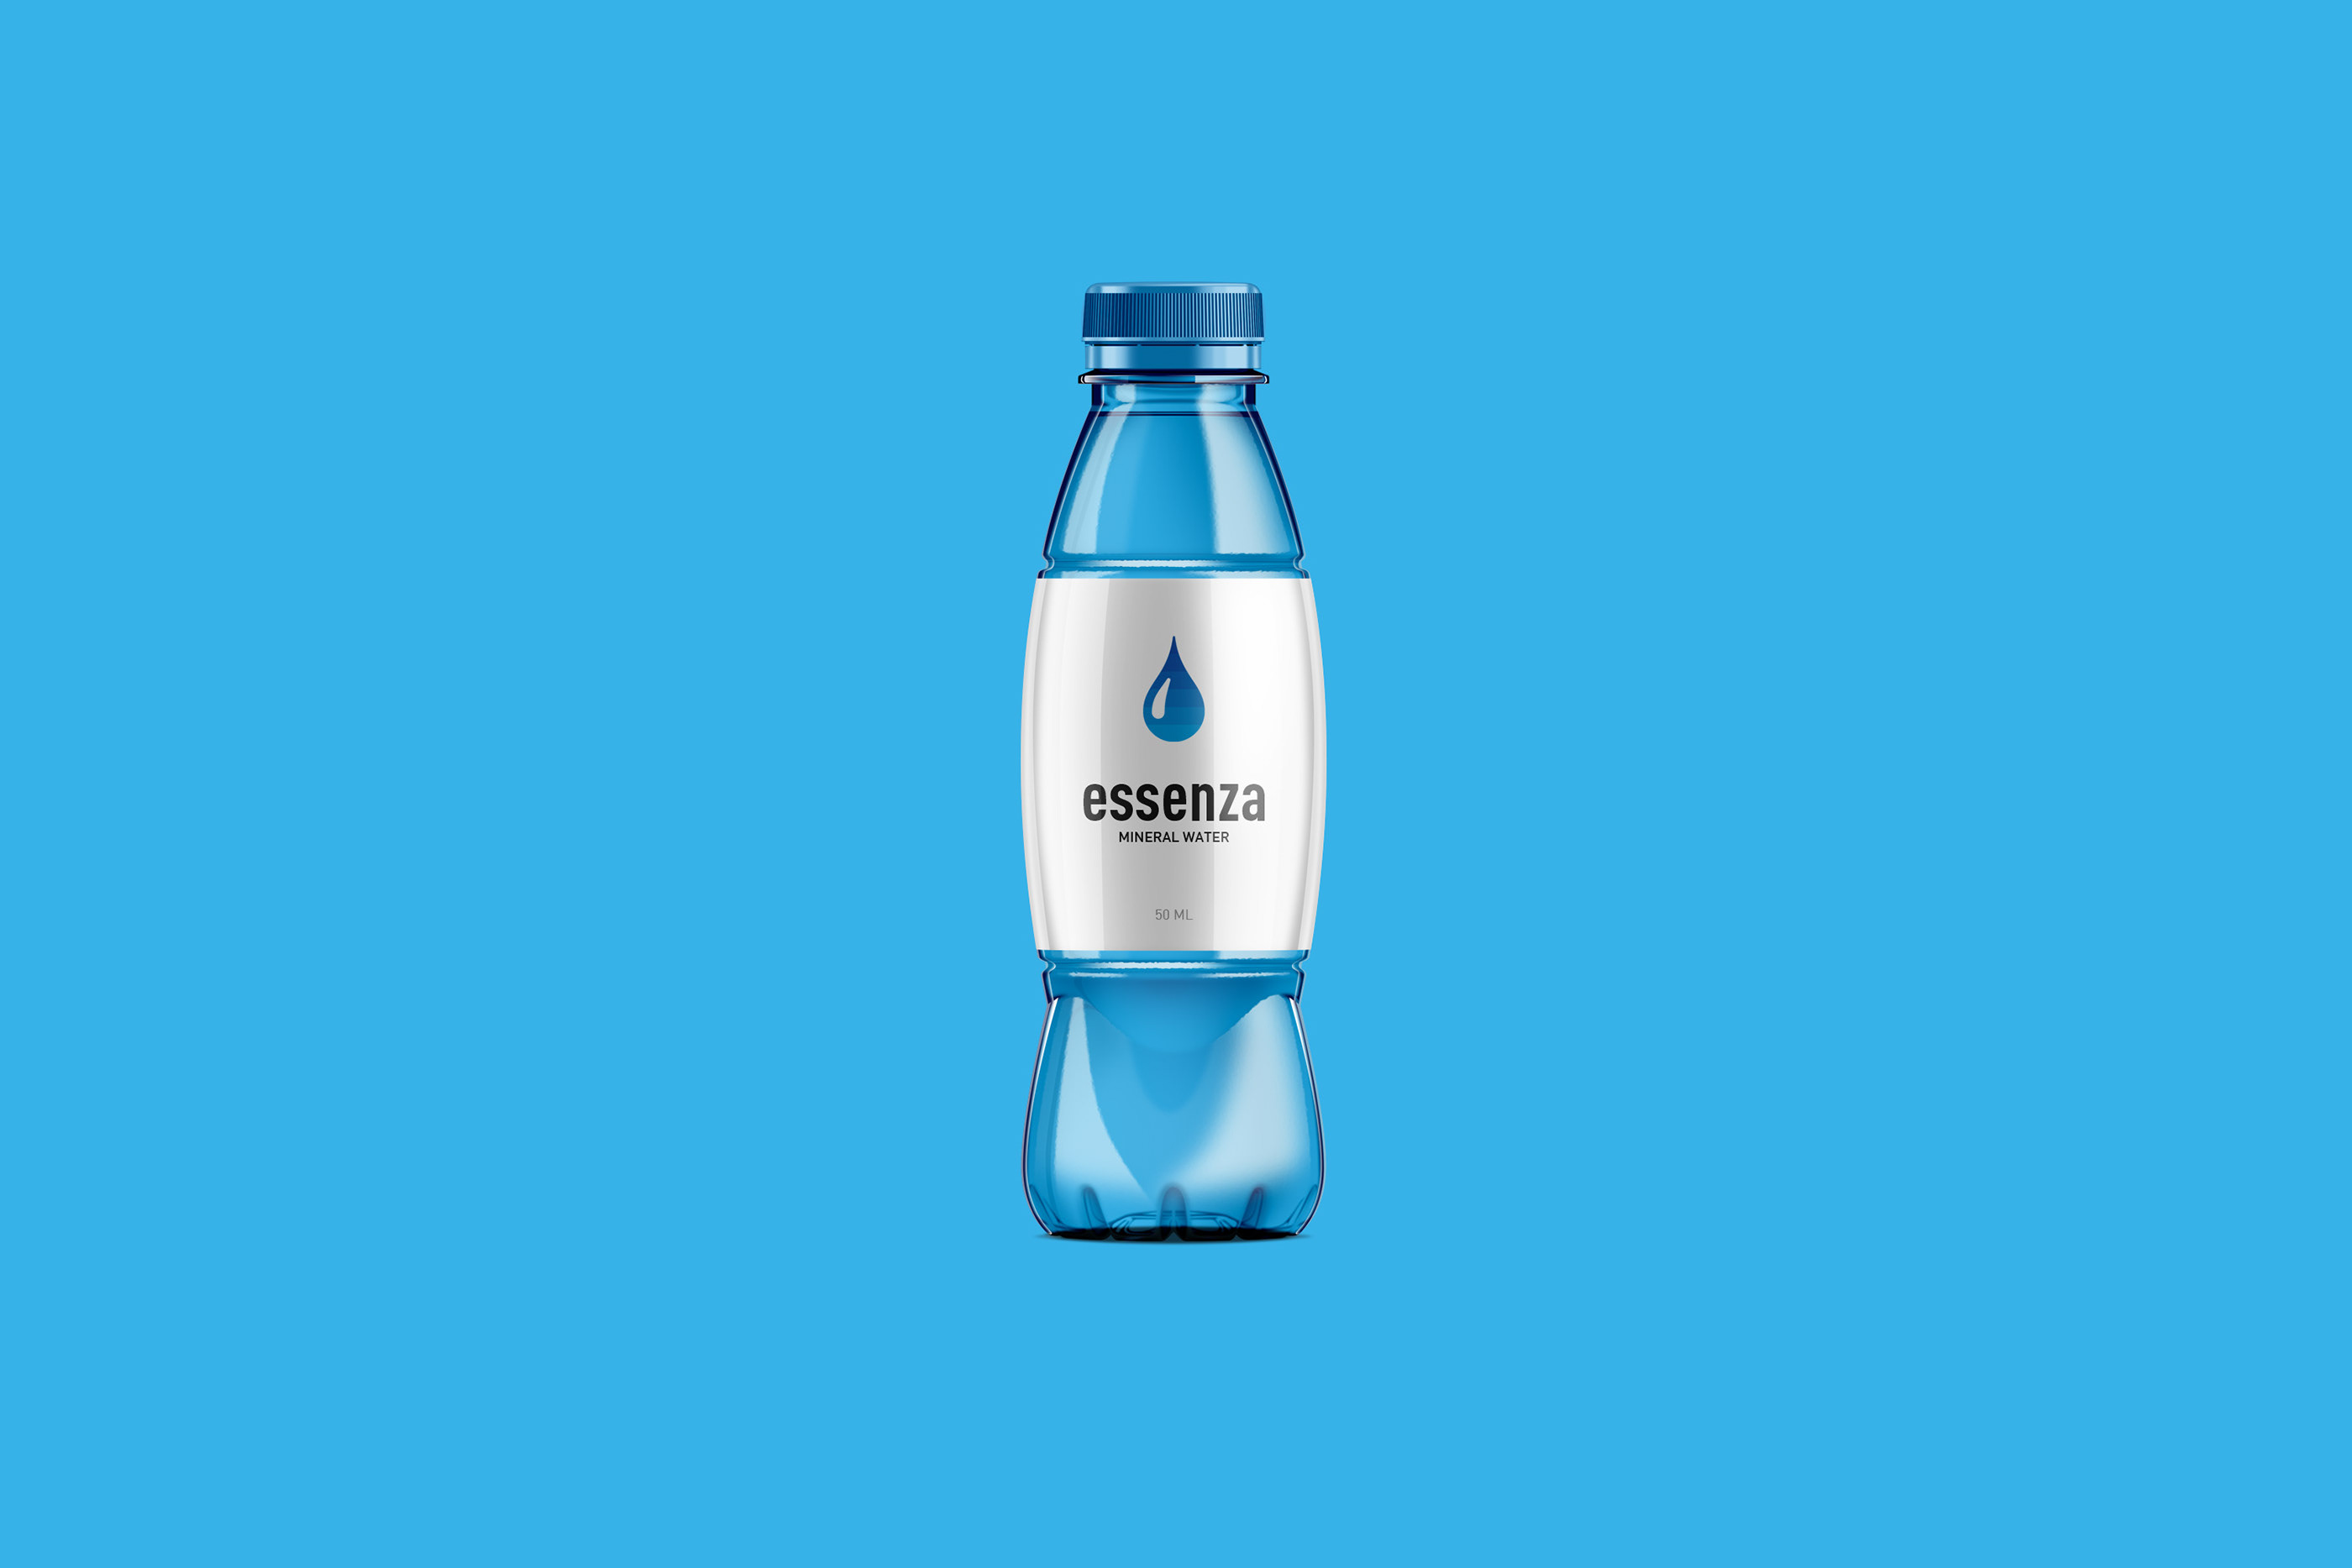 饮用水品牌essenza视觉形象设计